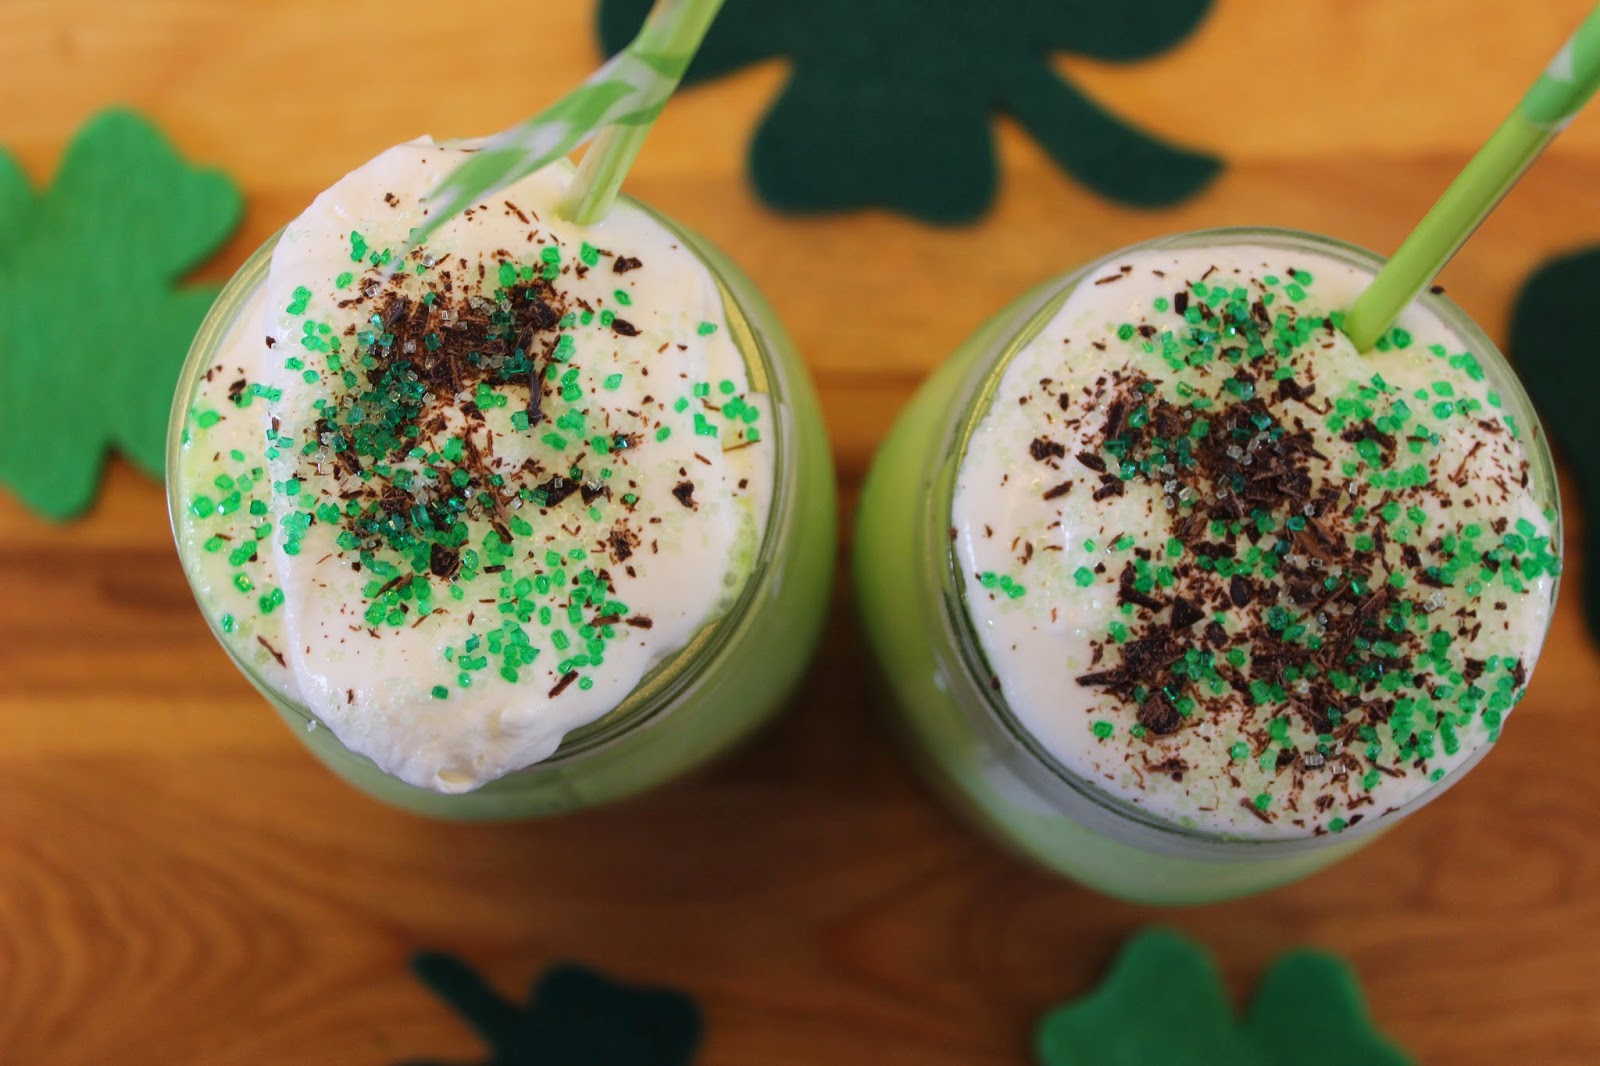 Mint Milkshakes for St. Patrick's Day